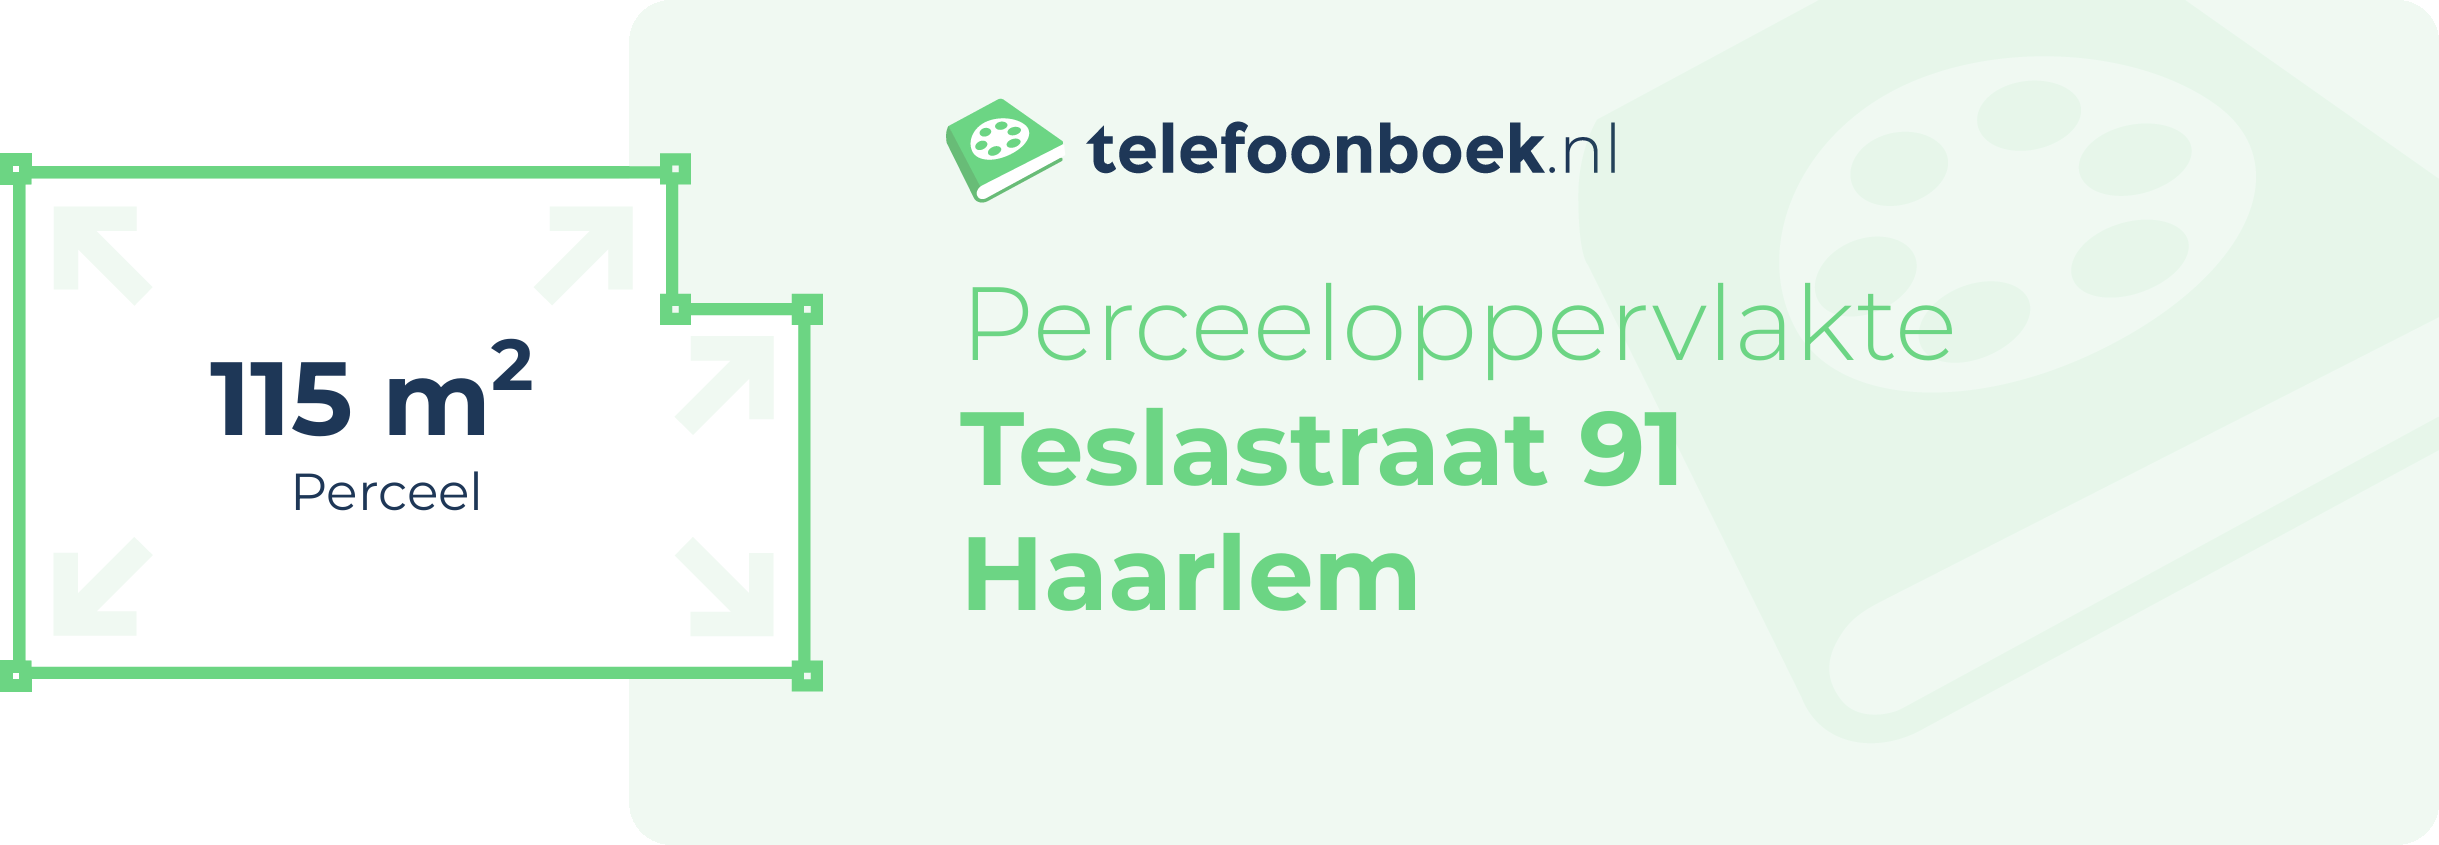 Perceeloppervlakte Teslastraat 91 Haarlem